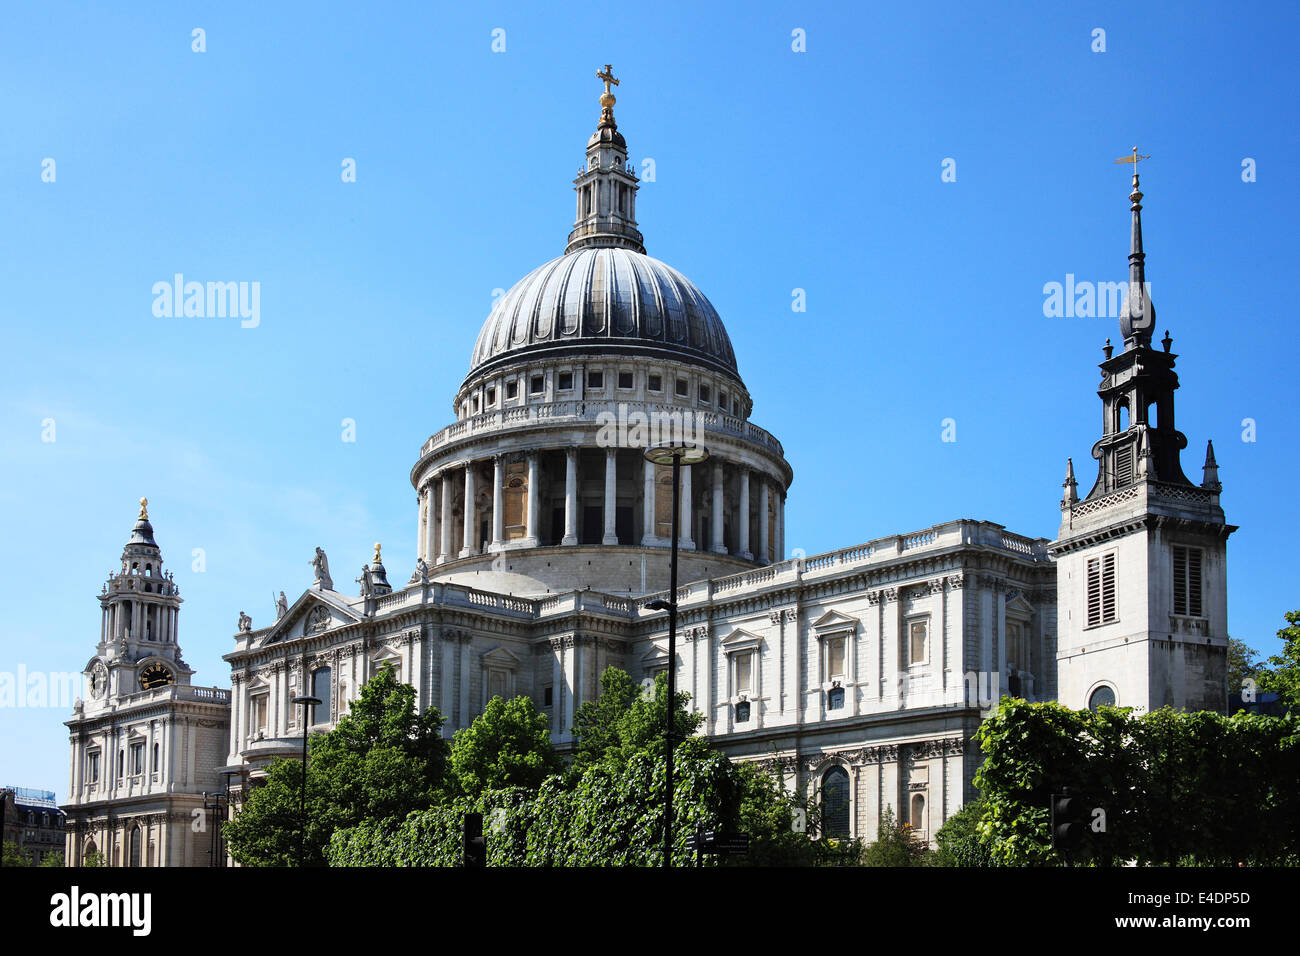 St. Pauls Cathedral in London, UK, gebaut nach dem großen Brand von London 1666, ist Christopher Wrens Meisterwerk Stockfoto